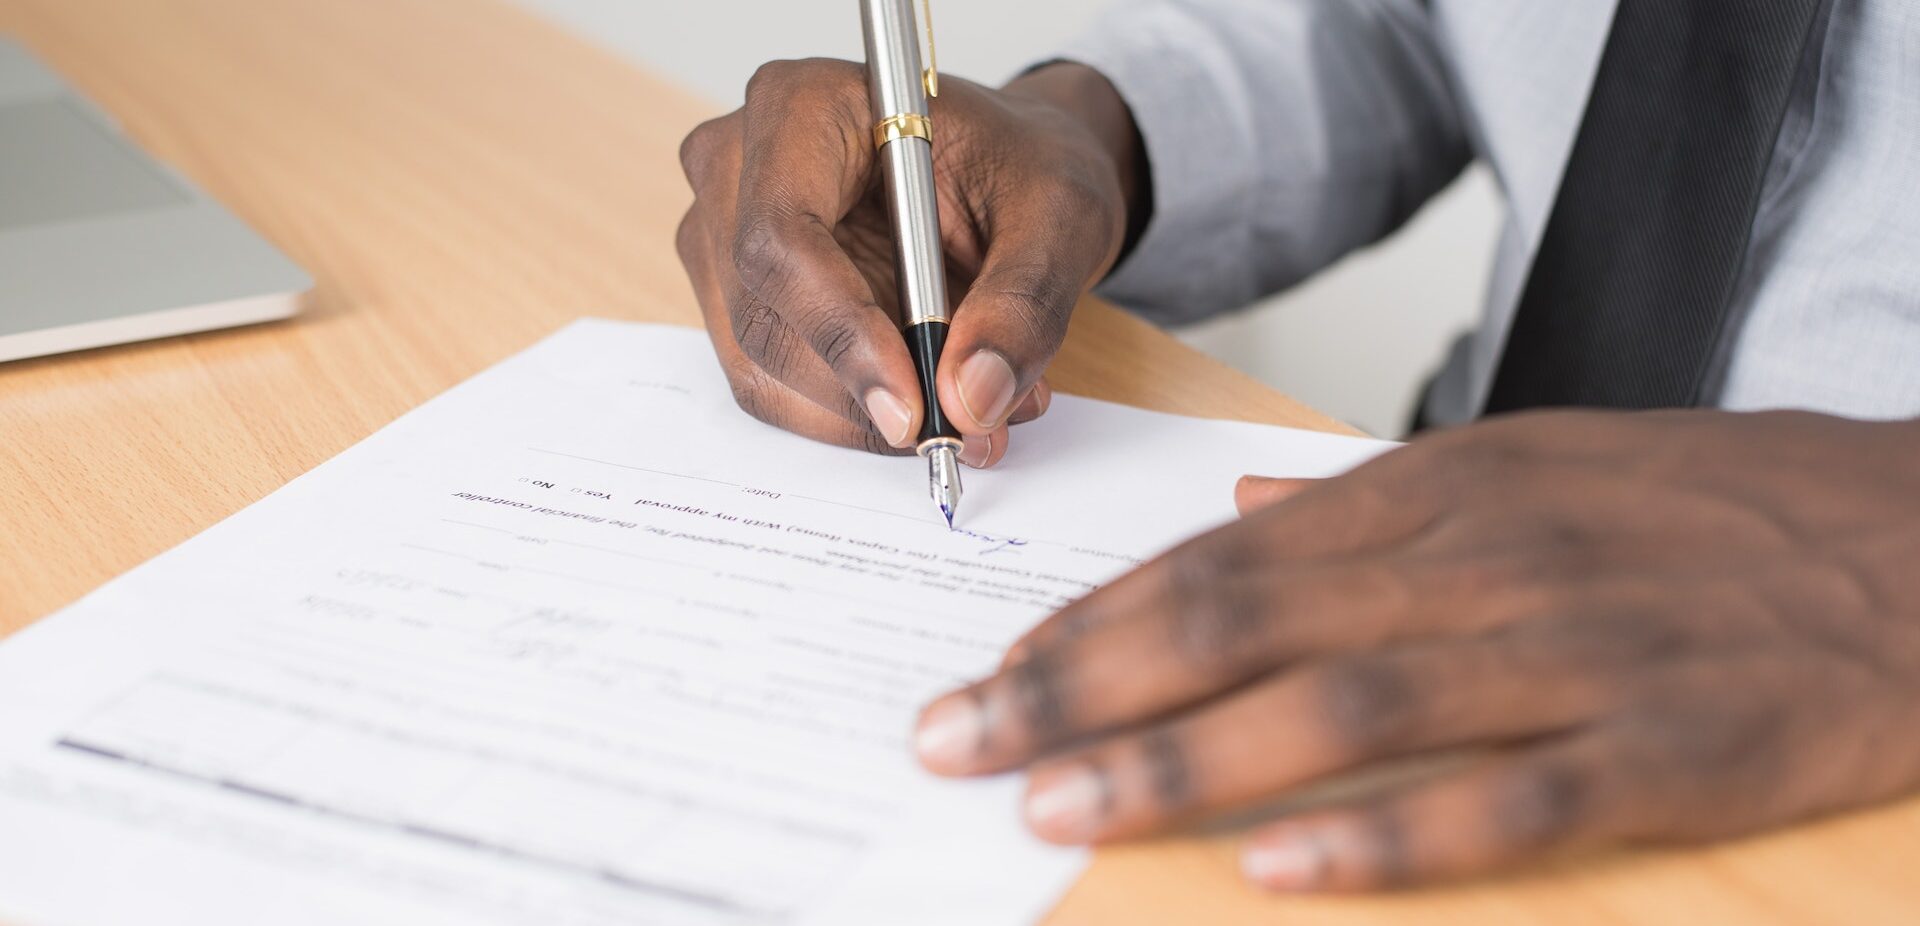 Rental Application - Man Signing